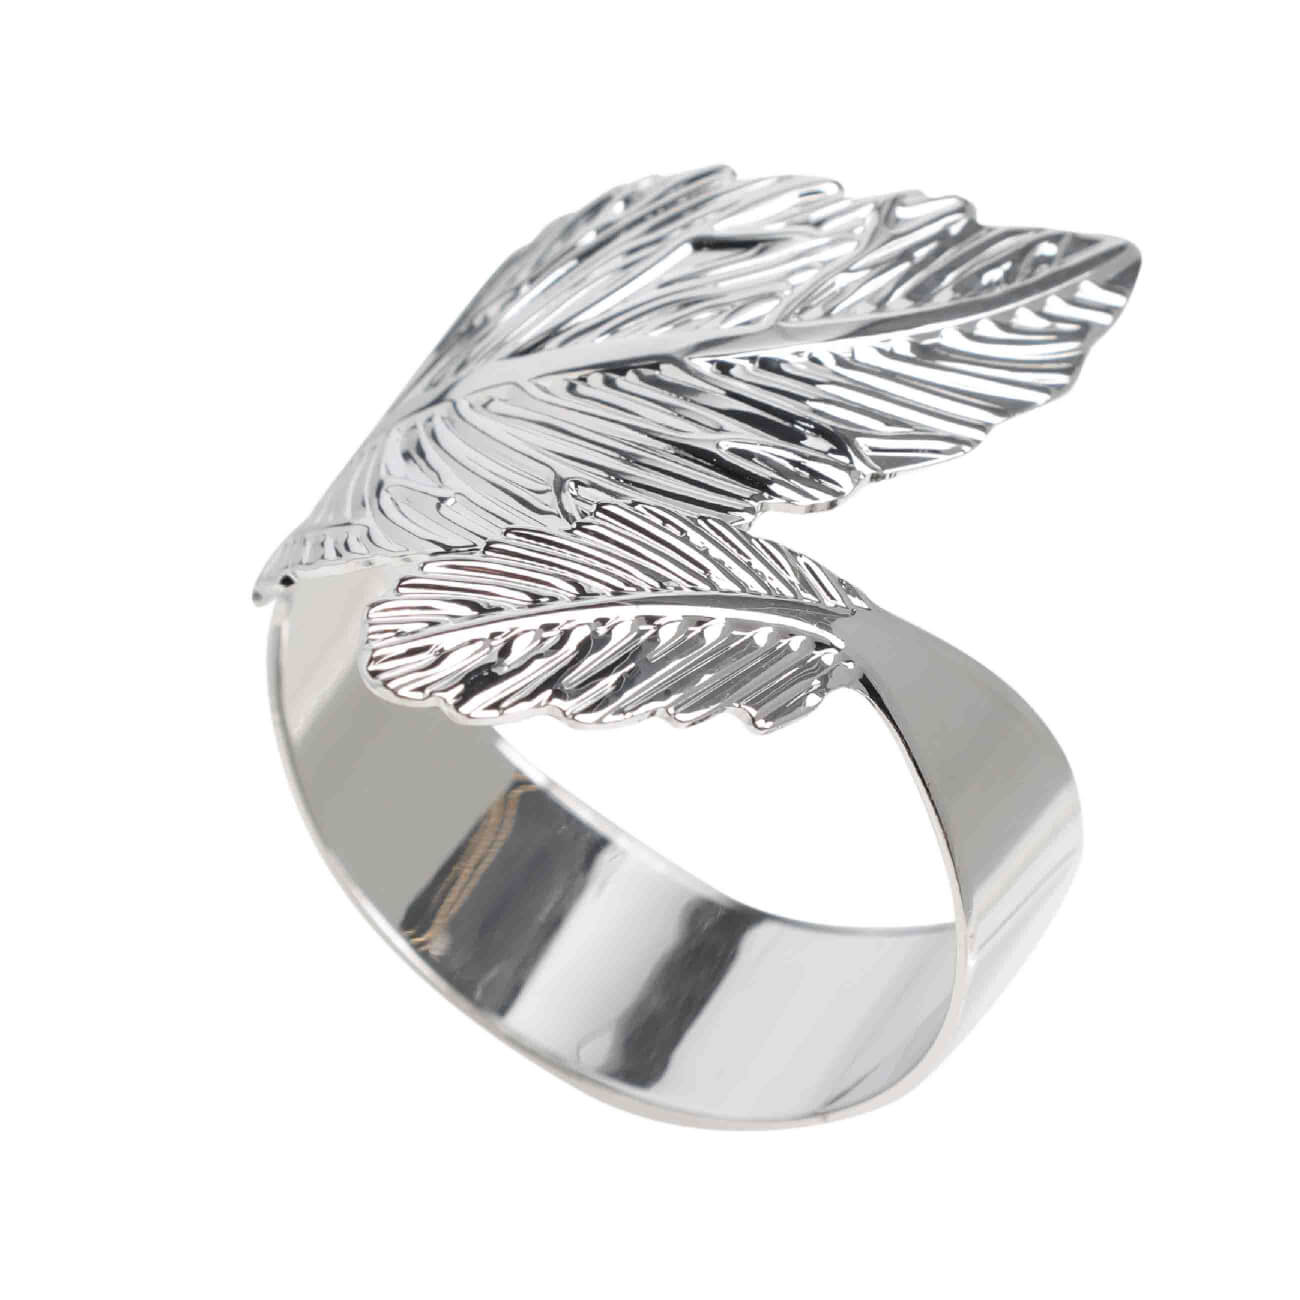 кольцо для салфеток 6 см металл серебристое ветка с листьями print Кольцо для салфеток, 5 см, металл, серебристое, Листья, Print